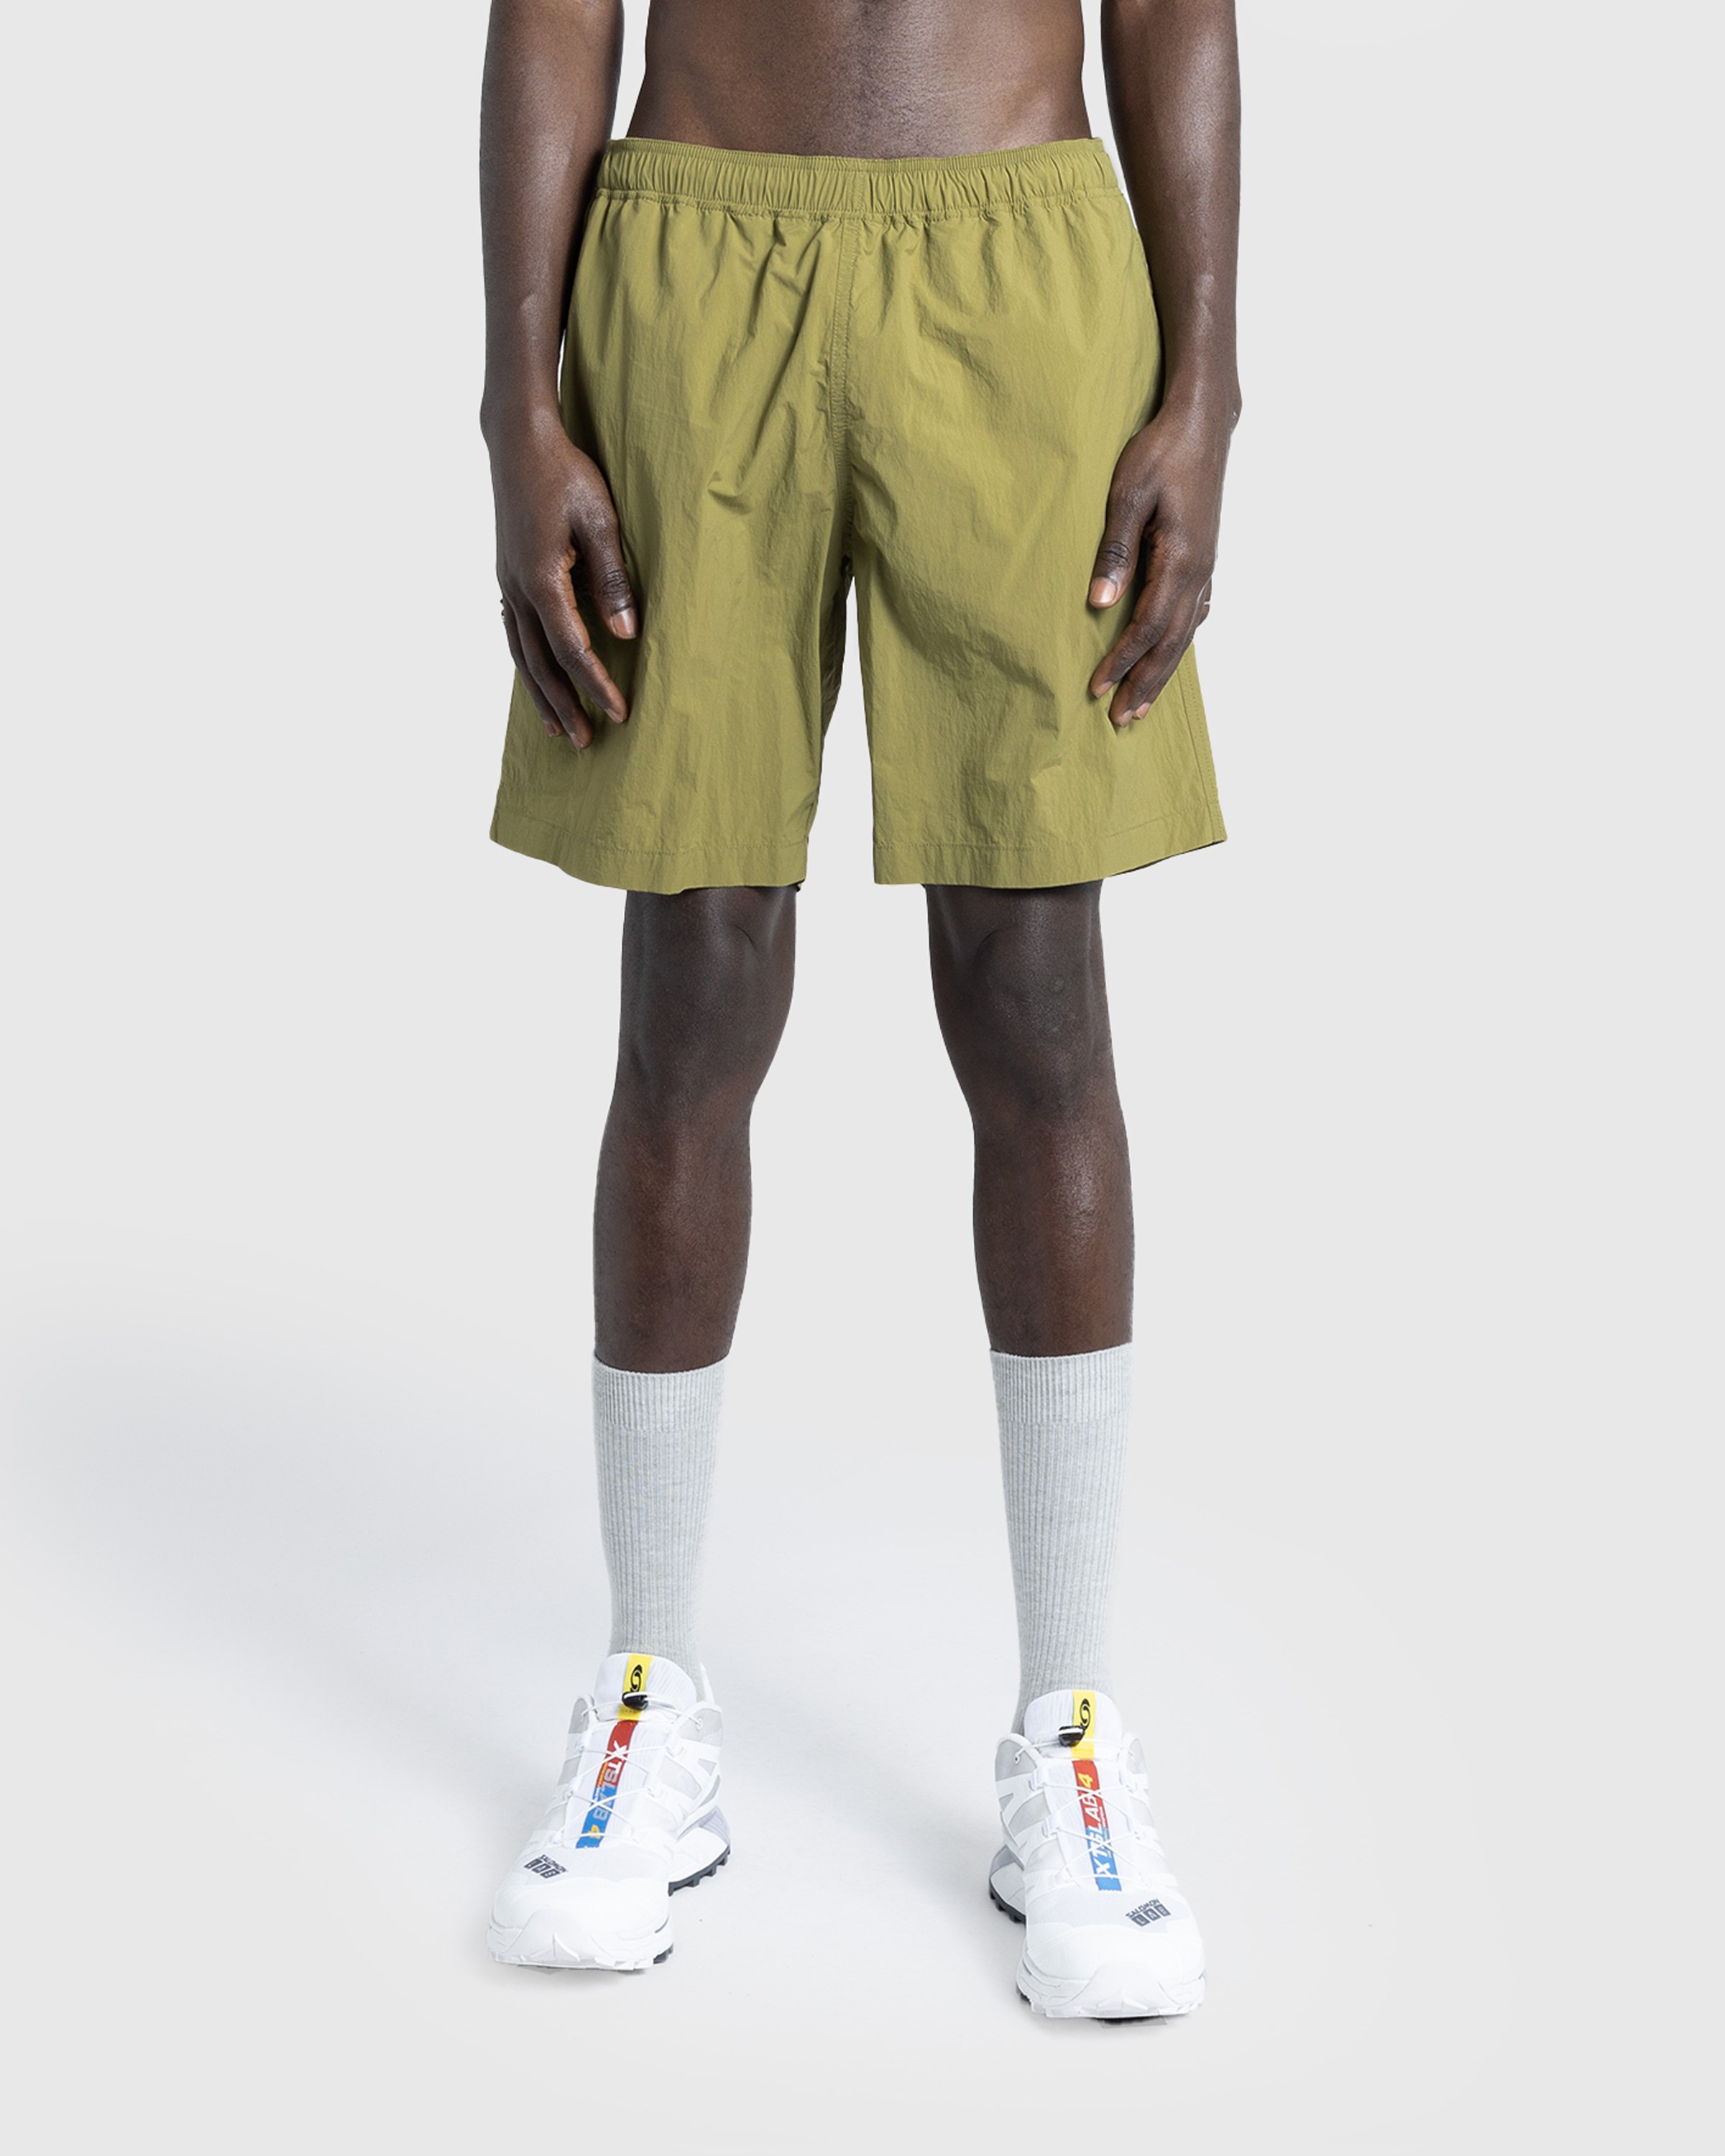 Highsnobiety HS05 - Natural Dyed Nylon Shorts - Clothing - Khaki - Image 3